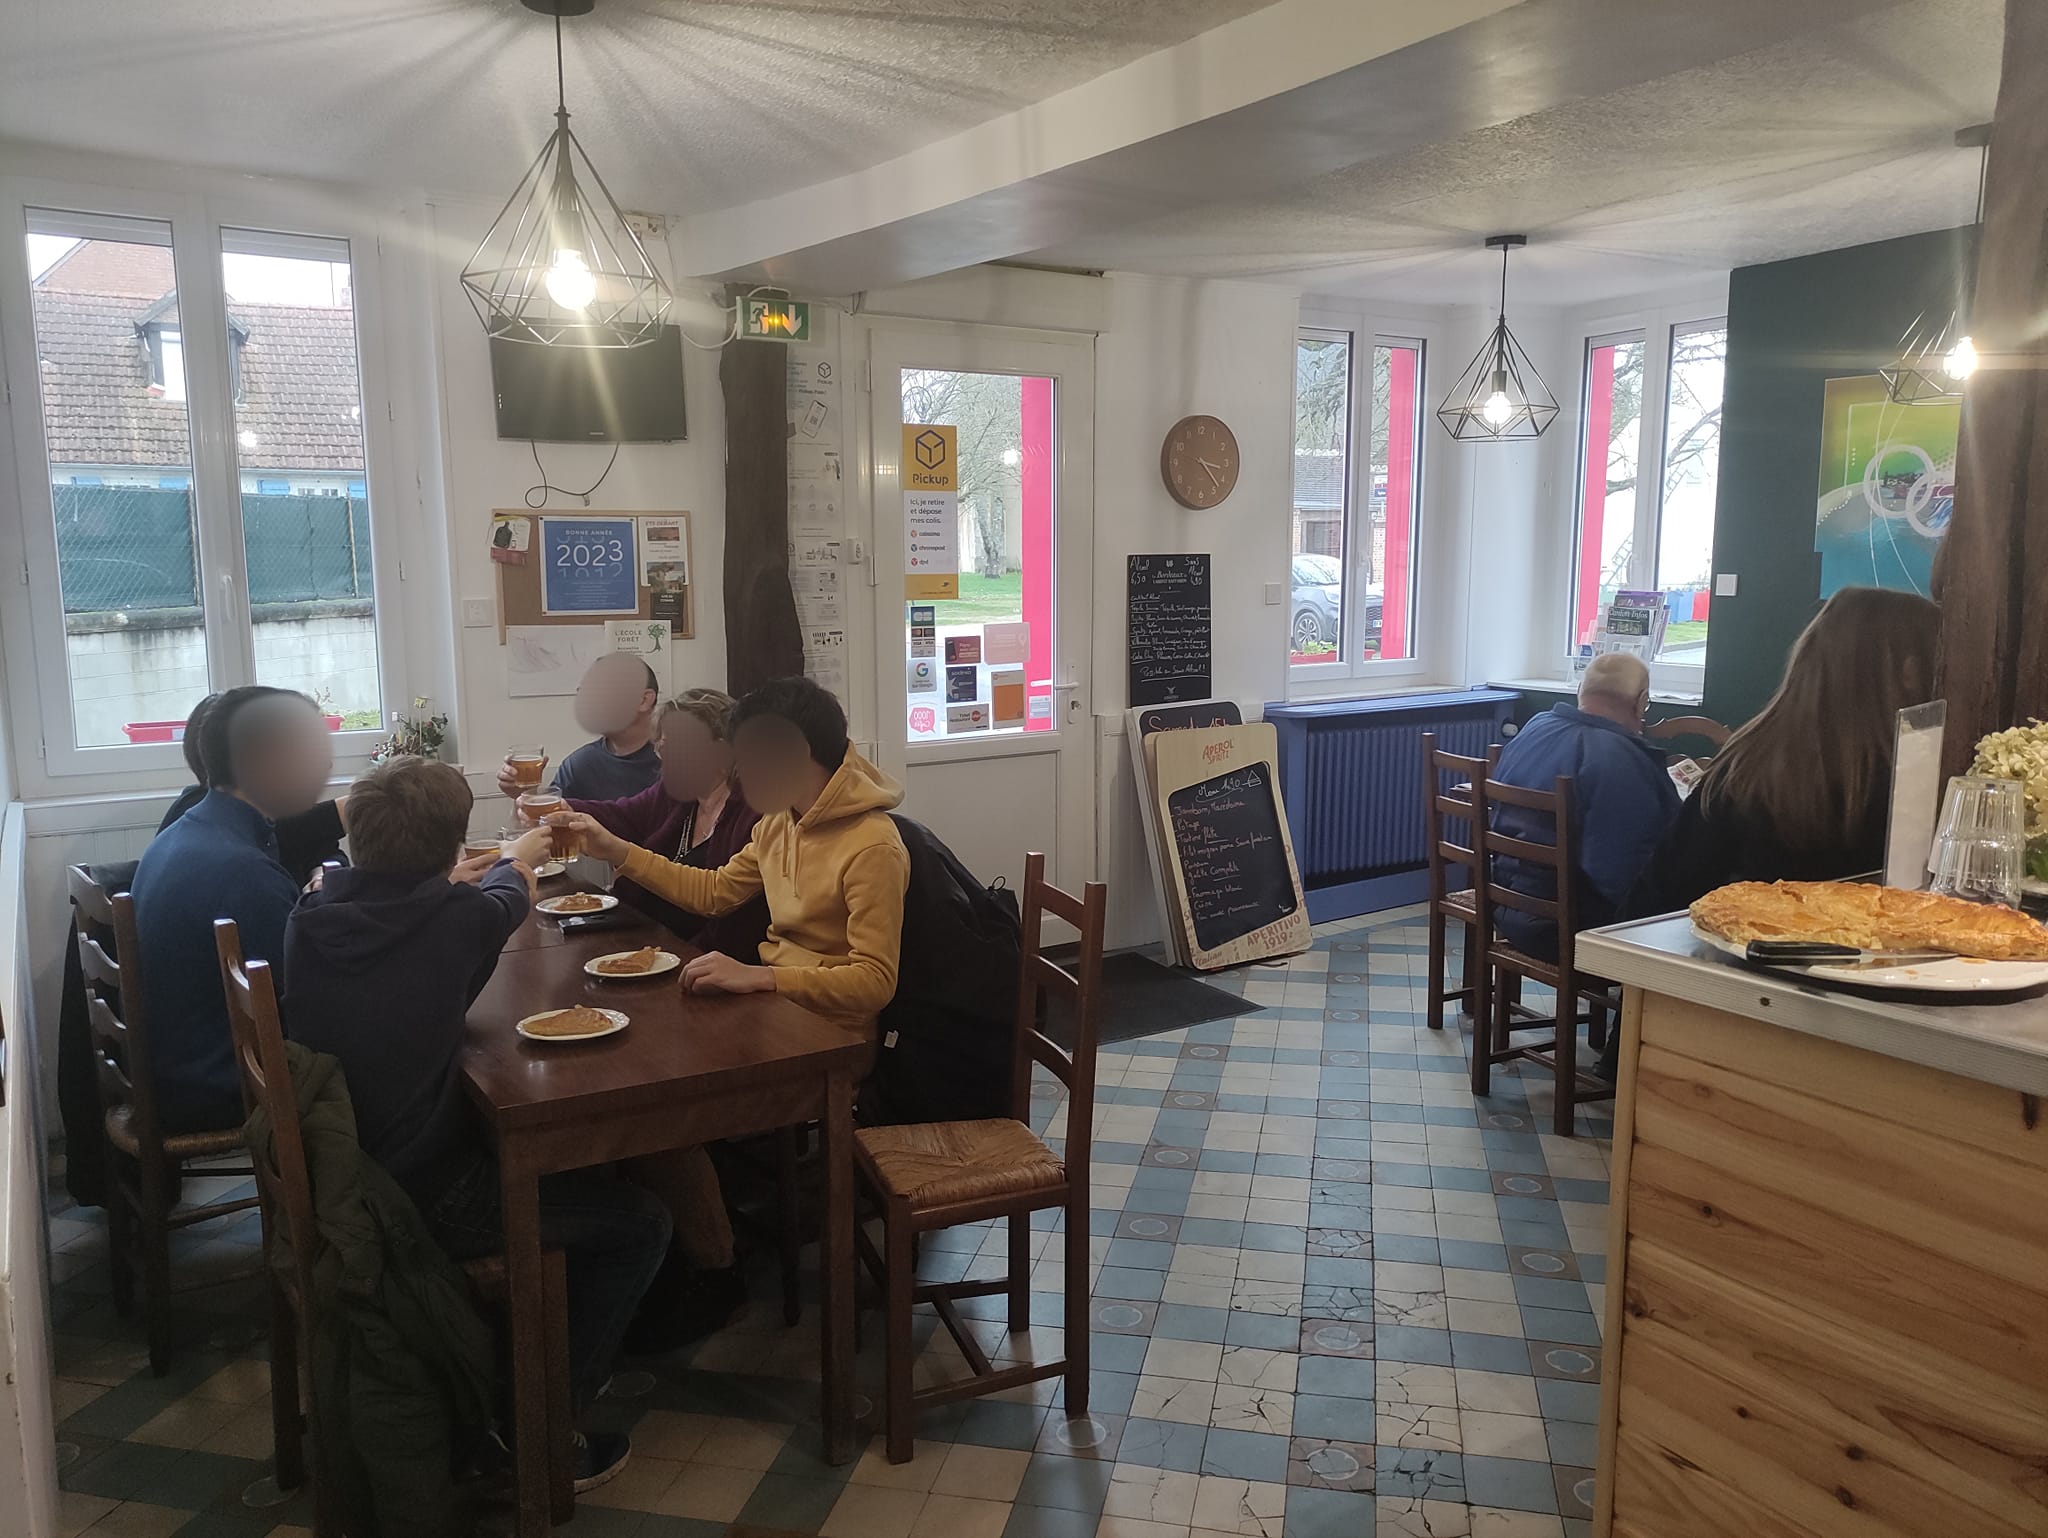 Missions :

Nous recherchons actuellement un.e candidat.e à la gérance du futur café multiservice à Villemurlin, qui est ouvert dans le cadre de l’initiative « 1000 cafés ». Le besoin en personnel étant d’1,6 ETP (équivalent temps plein), les candidatures de binômes sont encouragées. Le/la gérant.e peut en effet être accompagné.e d’une personne salariée par le café.

Villemurlin est une commune rurale située dans le département du Loiret, en région Centre-Val de Loire, au cœur de la Sologne. Pleine de charme et réputée pour ses échelles bleues, elle se situe à proximité de Gien et Sully-Loire. L’équipe municipale est dynamique et engagée. Une épicerie, la poste ainsi qu’une station essence sont déjà existantes sur la commune. Le local est un bâtiment pittoresque, situé au centre du village à proximité de l’église. Des espaces de stationnement sont disponibles à proximité immédiate du commerce, et il est également possible d’installer des tables en extérieur durant la belle saison. 

La restauration et le bar étant des activités importantes pour ce projet, nous valorisons les expériences en restauration et en hôtellerie. Les autres services pressentis sont : relais colis, dépannage tabac, restauration traditionnelle, animations. 

Nous recherchons avant tout des personnalités garantissant la convivialité du lieu, capables de co-construire les services de proximité répondant aux besoins identifiés en lien avec la commune, en adhésion avec les valeurs de l’économie sociale et solidaire. Des qualités de gérant, de commerçant ainsi qu’une réelle volonté d’entreprendre sont clés pour ce poste.

La perspective de contribuer à la revitalisation rurale en prenant la gérance d’un café multiservice vous séduit ? Rejoignez maintenant l’initiative 1000 Cafés !

1000 cafés est une initiative du GROUPE SOS qui a pour but de recréer du lien social dans les communes rurales. Elle contribue à redynamiser les territoires par la création ou la reprise de cafés multiservice dans des communes de moins de 3 500 habitants qui n'ont plus de café ou risquent de le perdre.

Les principes de l'initiative “1000 cafés” du GROUPE SOS sont :

● Faire du café un espace de convivialité multiservice qui proposera un café et une gamme de services de proximité qui n’existent plus dans la commune
● Créer un café au plus près de chaque territoire : faire participer les habitants des communes, écouter leurs besoins et envies, en s’assurant que le café vivra pleinement demain
● Accompagner le café dans la création et la gestion au quotidien : faciliter l’accès aux locaux, mutualiser des fournisseurs, proposer des outils de gestion, accompagner les relations avec les institutions

L’initiative 1000 cafés a été lancée en septembre 2019 et nous comptons déjà un réseau de cafés multiservice en pleine croissance.

Si vous souhaitez vous lancer dans une aventure entrepreneuriale au service de la convivialité de votre village, si vous voulez être au cœur d’un projet pensé pour et par les habitants, alors portez-vous candidat !
Pour plus d’informations, rendez-vous sur notre site internet 1000cafés.org

Profil recherché : 

• Vous souhaitez vous engager en faveur de la ruralité et de la redynamisation des petites communes 
• Vous justifiez d’une expérience significative dans le secteur de la restauration et maitrisez les techniques culinaires essentielles, ainsi que les normes d’hygiène et de sécurité
• Vous êtes disponible et prêt à vous engager dans une démarche entrepreneuriale afin que le projet prenne corps au sein du village
• Vous avez des bases solides en gestion et faites preuve de rigueur et d’organisation
• Vous êtes fédérateur et maîtrisez les outils de communication
• Vous êtes motivé, sérieux, adaptable, proactif et avez un fort intérêt pour les valeurs de l’économie sociale et solidaire
• Vous savez gérer des situations difficiles en gardant votre sang-froid
• Vous remplissez les conditions liées à l’octroi d’une licence de débit de boissons (licence IV).

La rémunération du gérant dépend du niveau d’activité de la SARL dont celui-ci a la responsabilité. Notre objectif : créer le cadre nécessaire pour que vous puissiez vous rémunérer à hauteur de 1800€ mensuel brut. Base à laquelle vient s'ajouter  :​

	•     1,5 % du chiffre d’affaires mensuel pour l'activité de restauration et de bar​

	•     1% du chiffre d'affaires mensuel sur les autres services​

        •     33% du résultat annuel d'exploitation 

Ouverture envisagée : juin 2023 

Statut : Gérant.e mandataire